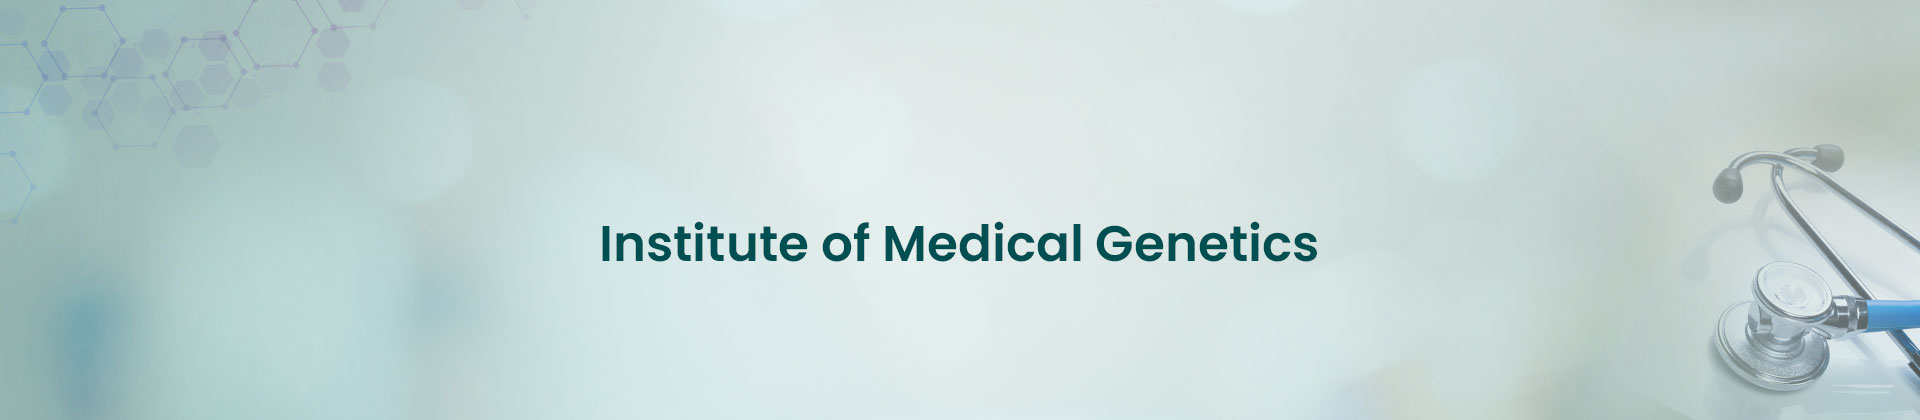 Institute of Medical Genetics